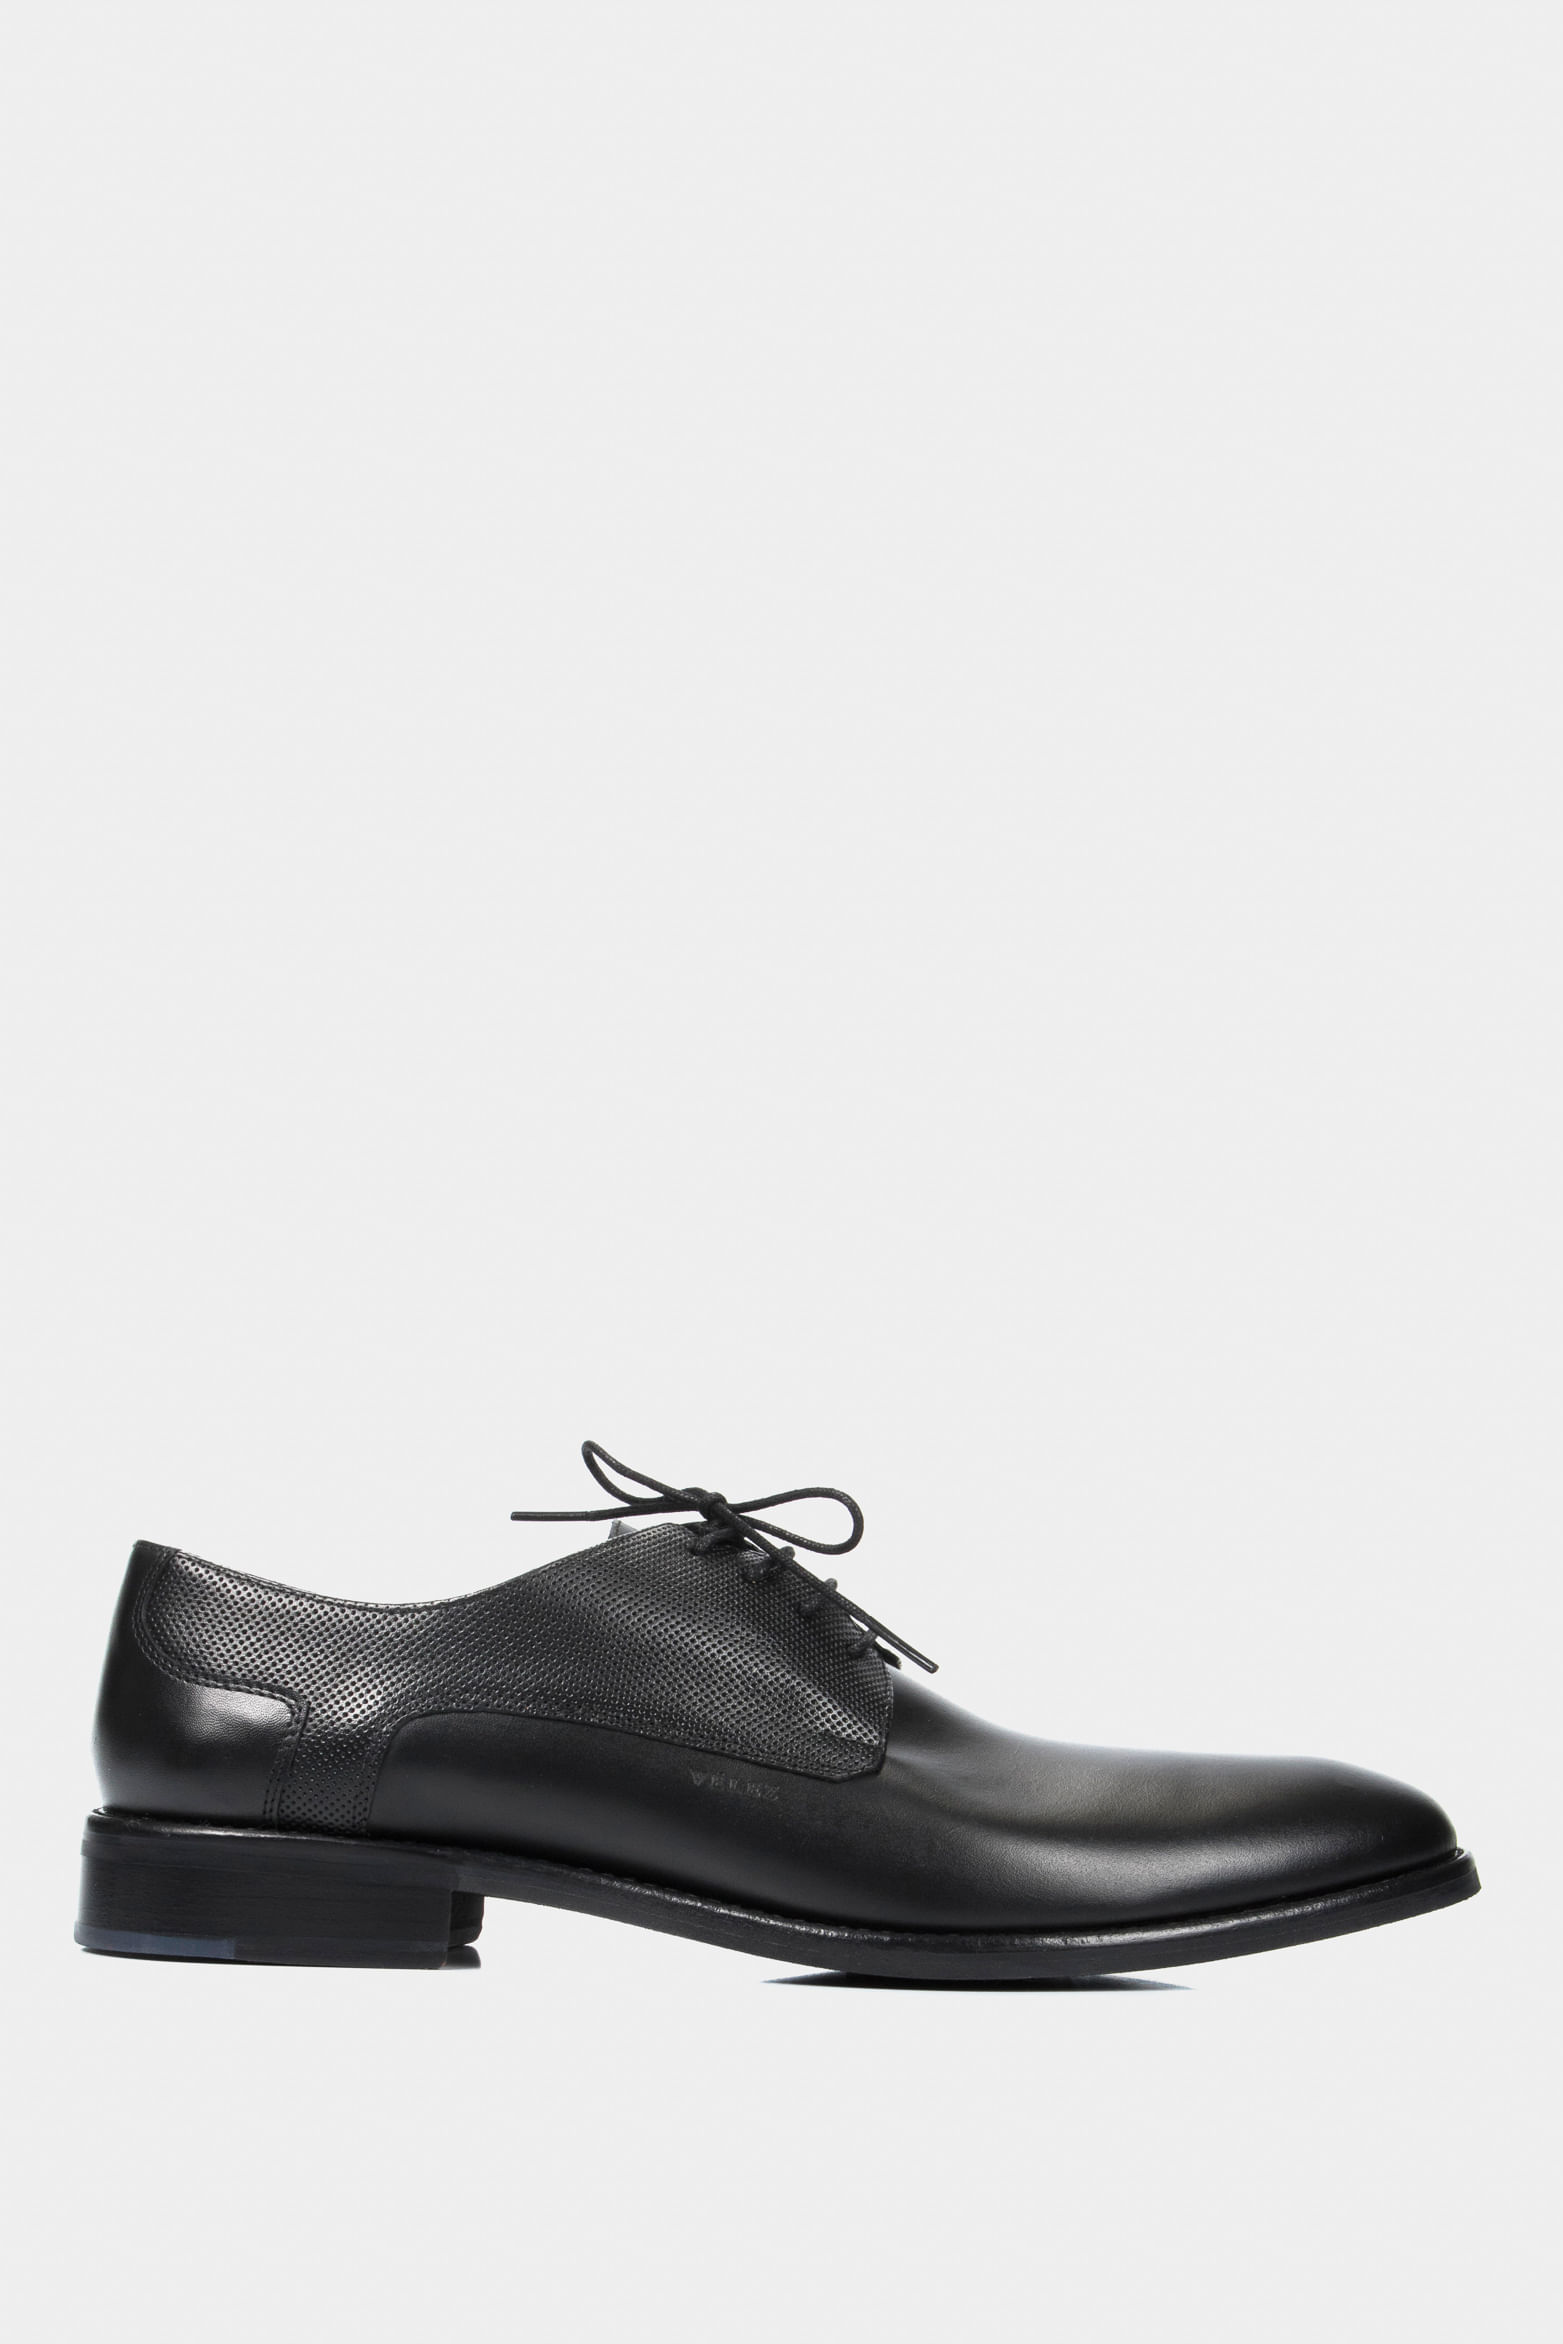  VELEZ Zapatillas de cuero para hombre - Zapatos de vestir  casuales de negocios - Tenis de moda con cordones, Tenis Negro : Ropa,  Zapatos y Joyería